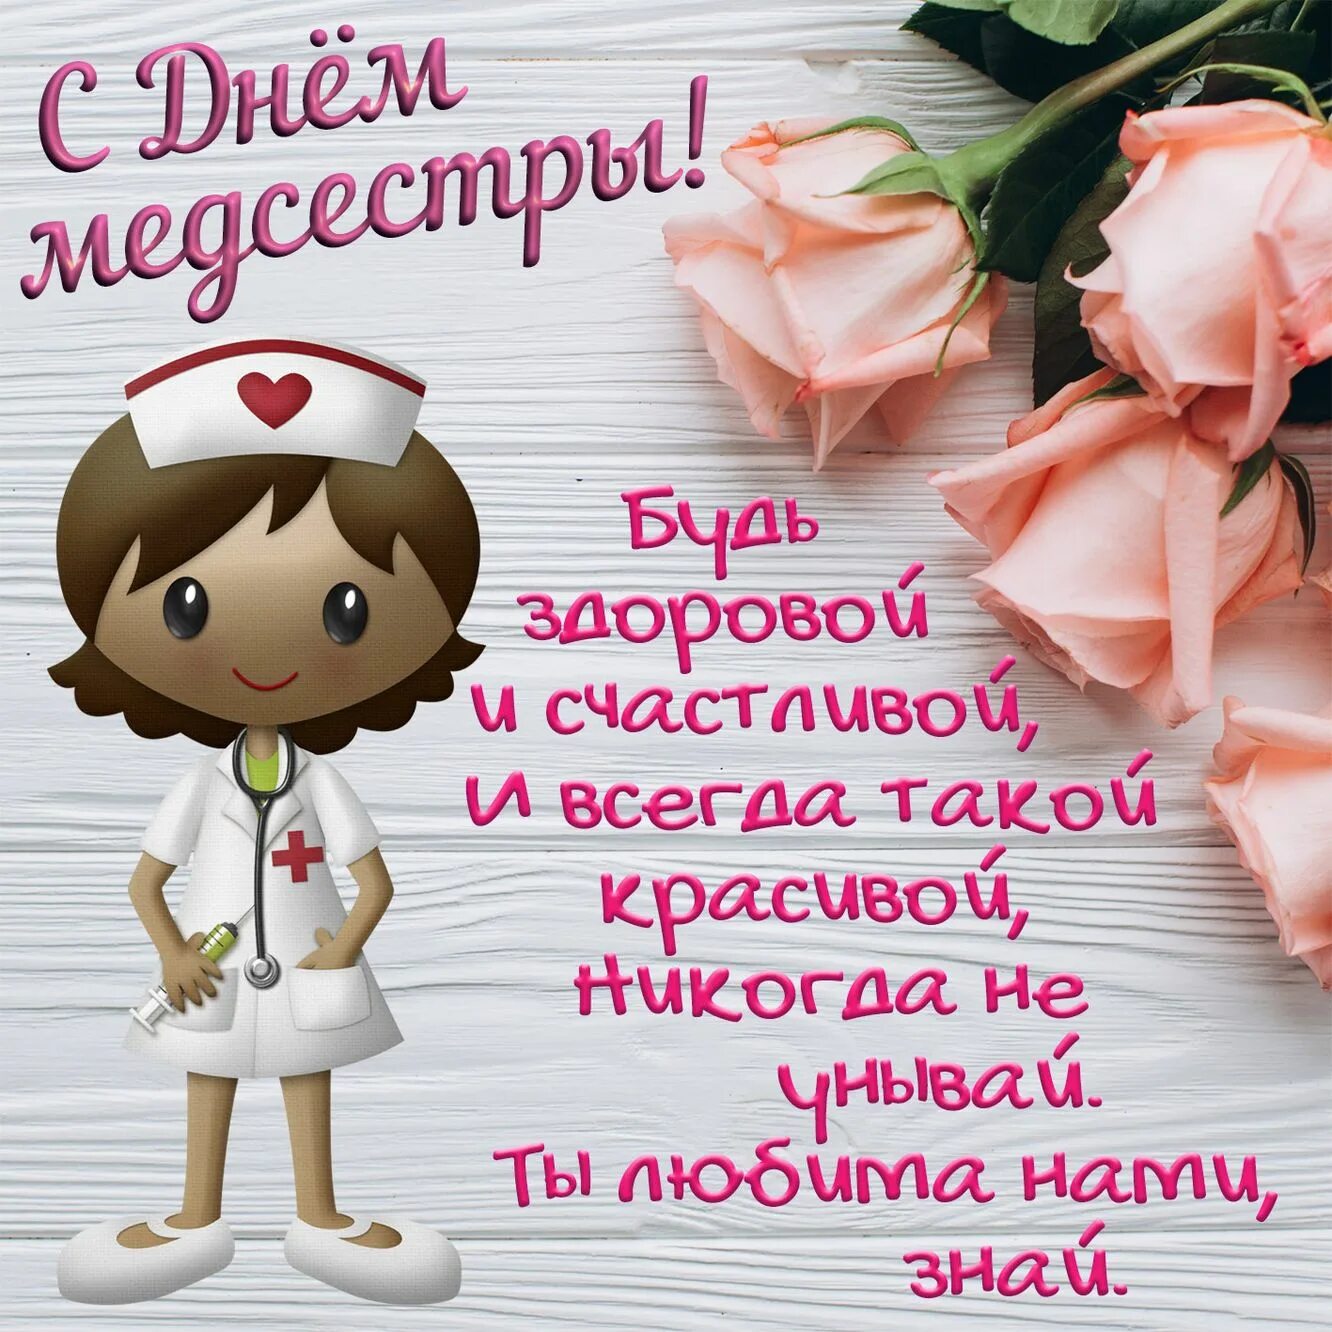 12 мая день медицинской сестры. С днём медицинской сестры поздравления. Поздравления с днём медсестры. Открытка с поздравлением медсестры. Поздрааления с днём медицинской сестры.